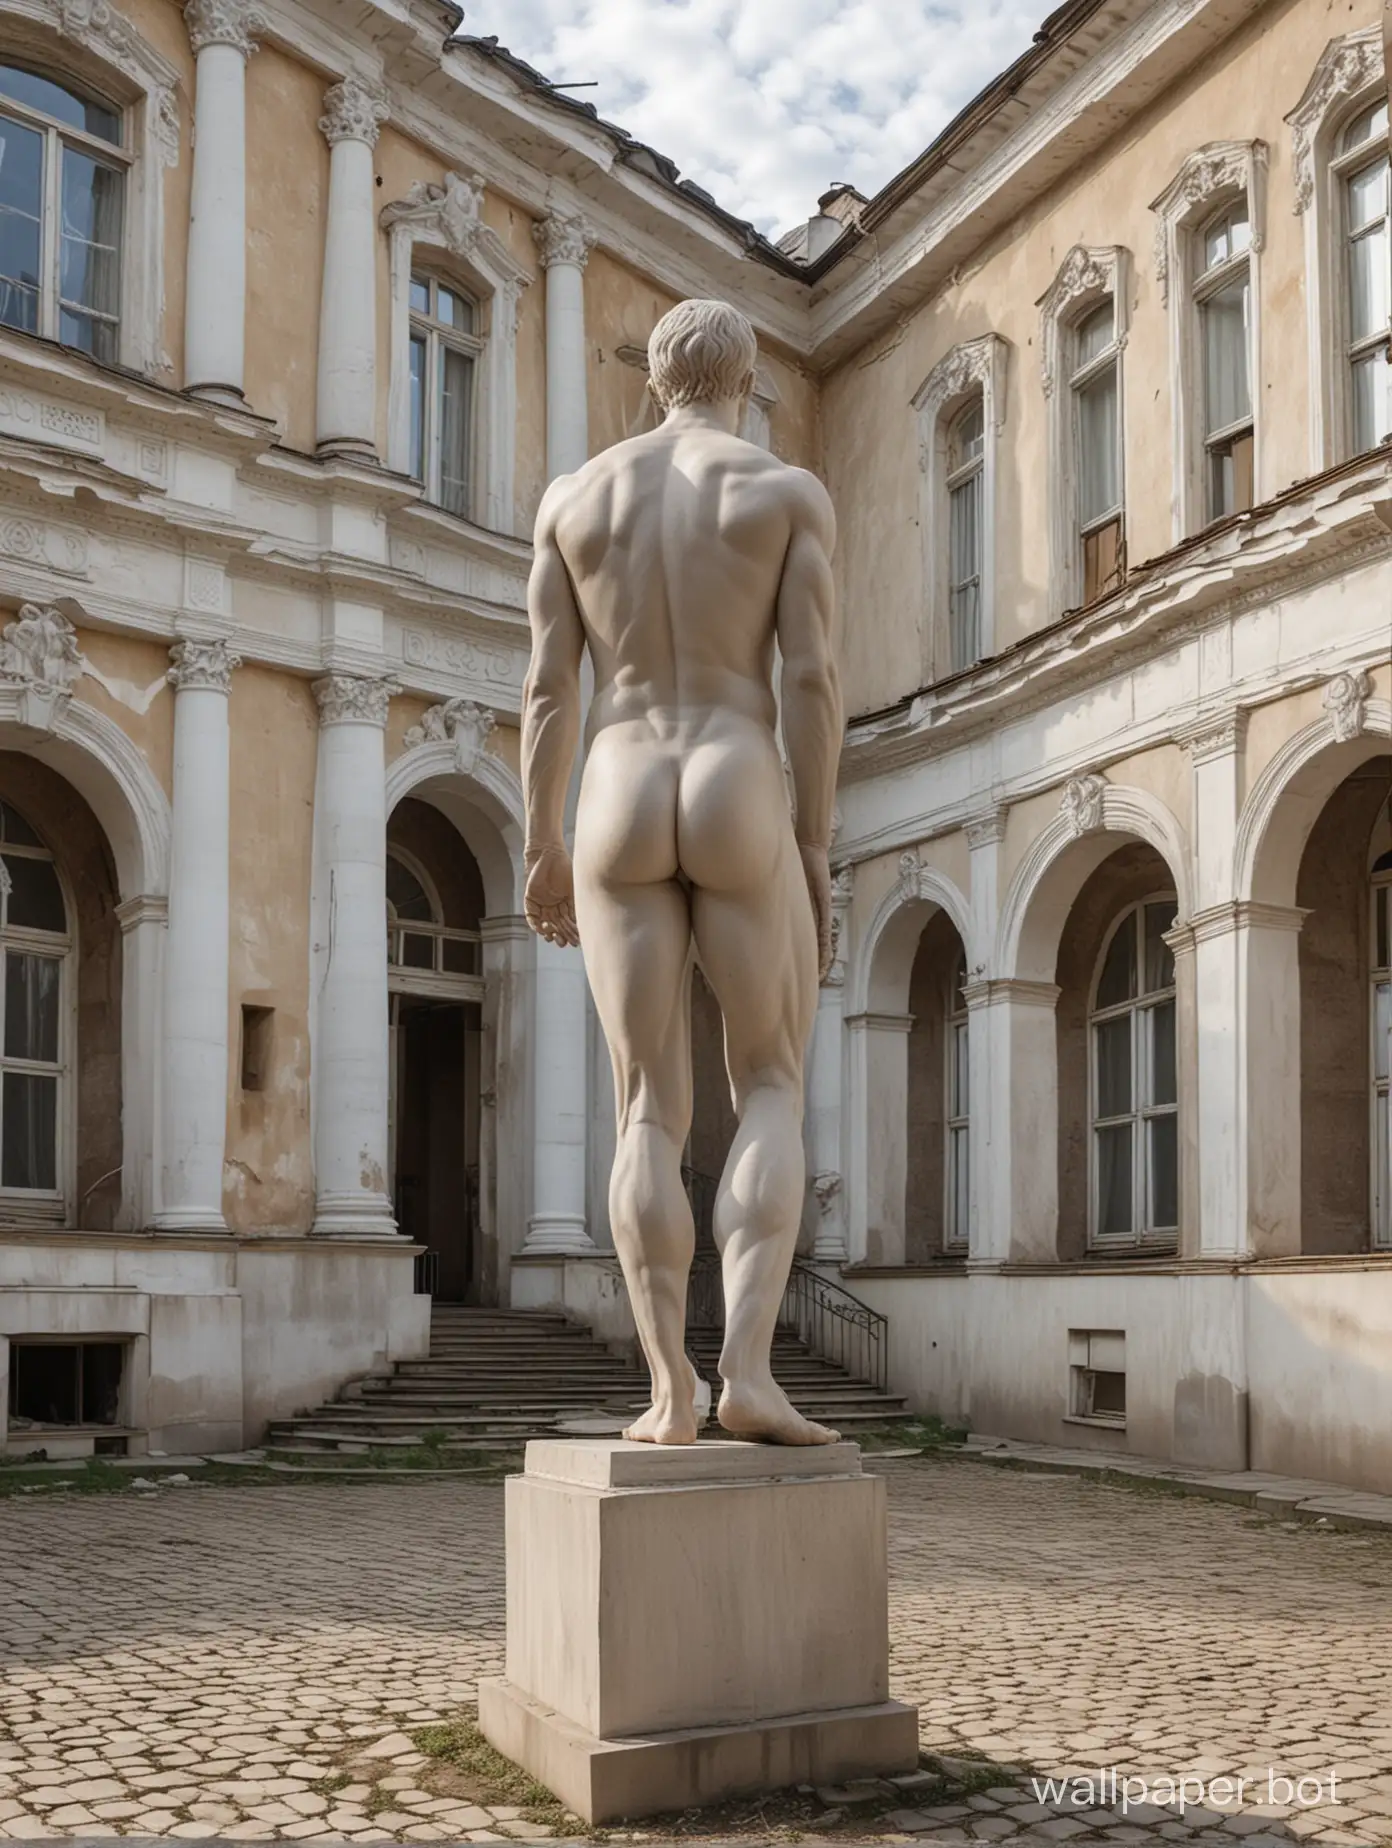 памятник из гипса, голый мужчина со спортивной фигурой, вид сзади, в полный рост, динамичные позы, двор российской школы, школьницы смотрят на памятник